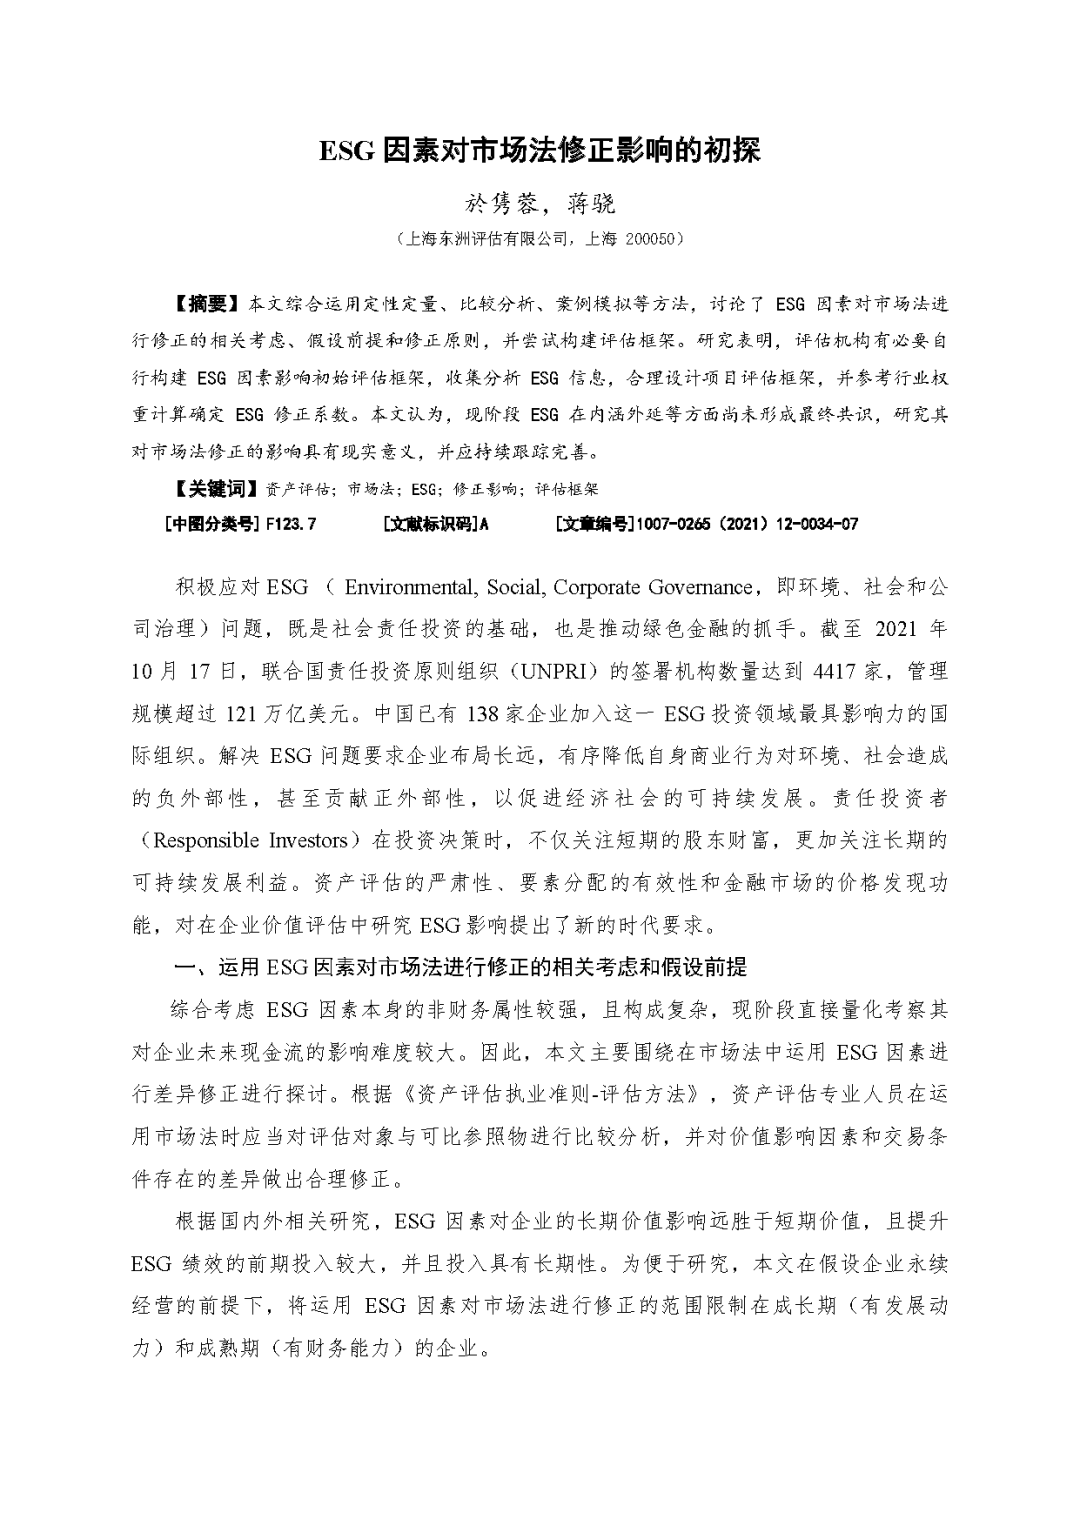 尊龙凯时ag旗舰厅官网评估於隽蓉、蒋骁等在《中国资产评估》揭晓专业文章《ESG因素对市场法修正影响的初探》